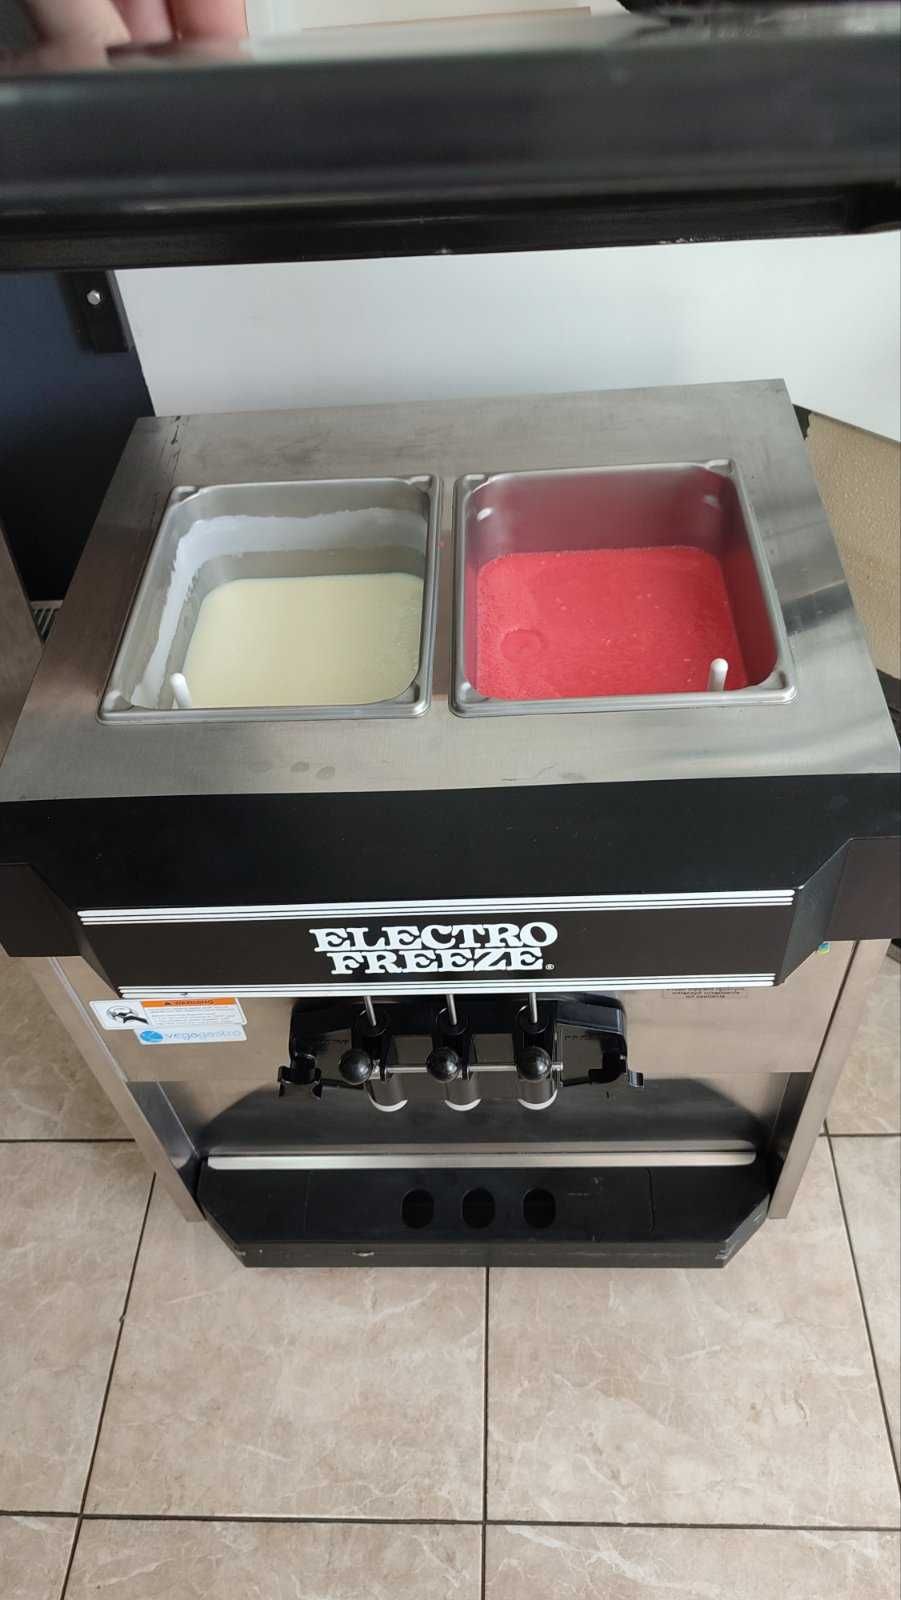 Electro freeze (USA) фрізер для мороженого на 220В.  як в Макдональдс!